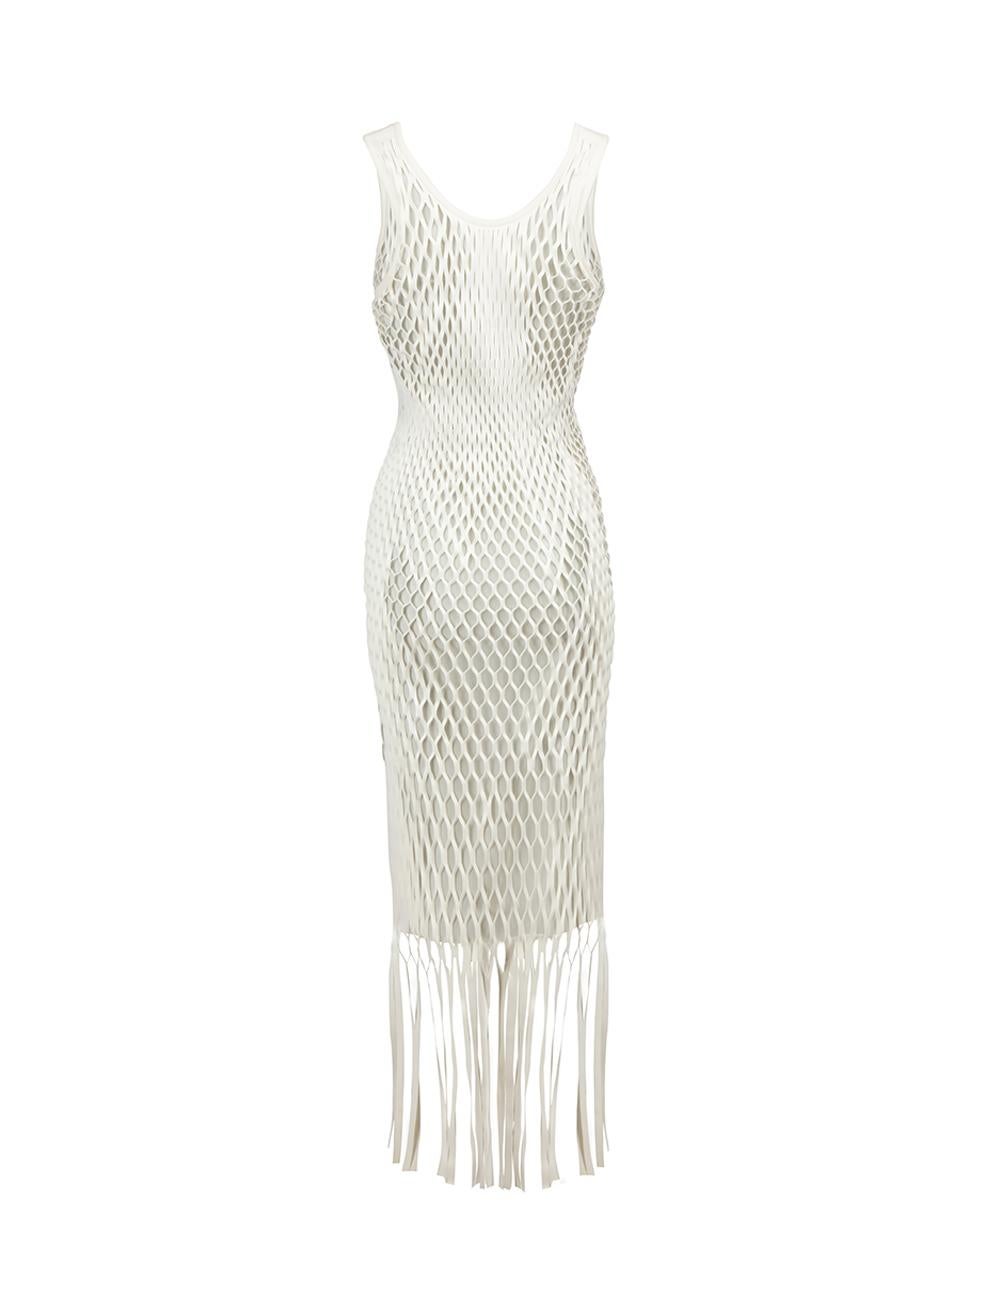 Gray White Laser Cut Net Midi Dress Size XS